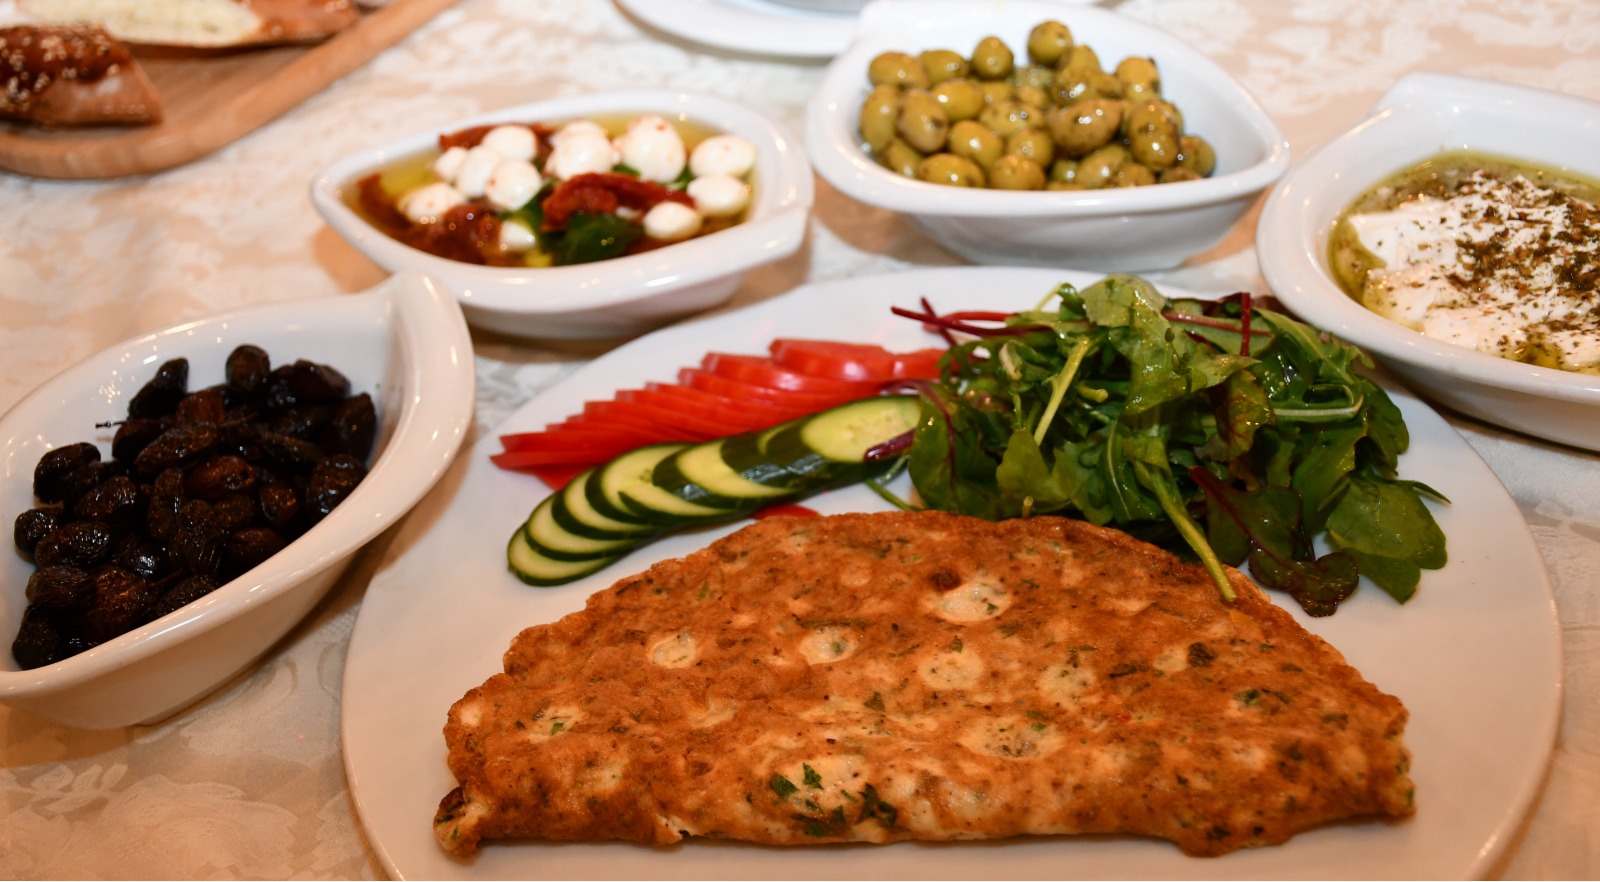 اليوم الجمعة أنتم على موعد مع وجبات الافطار الشهية في مطعم حاج كحيل بيافا